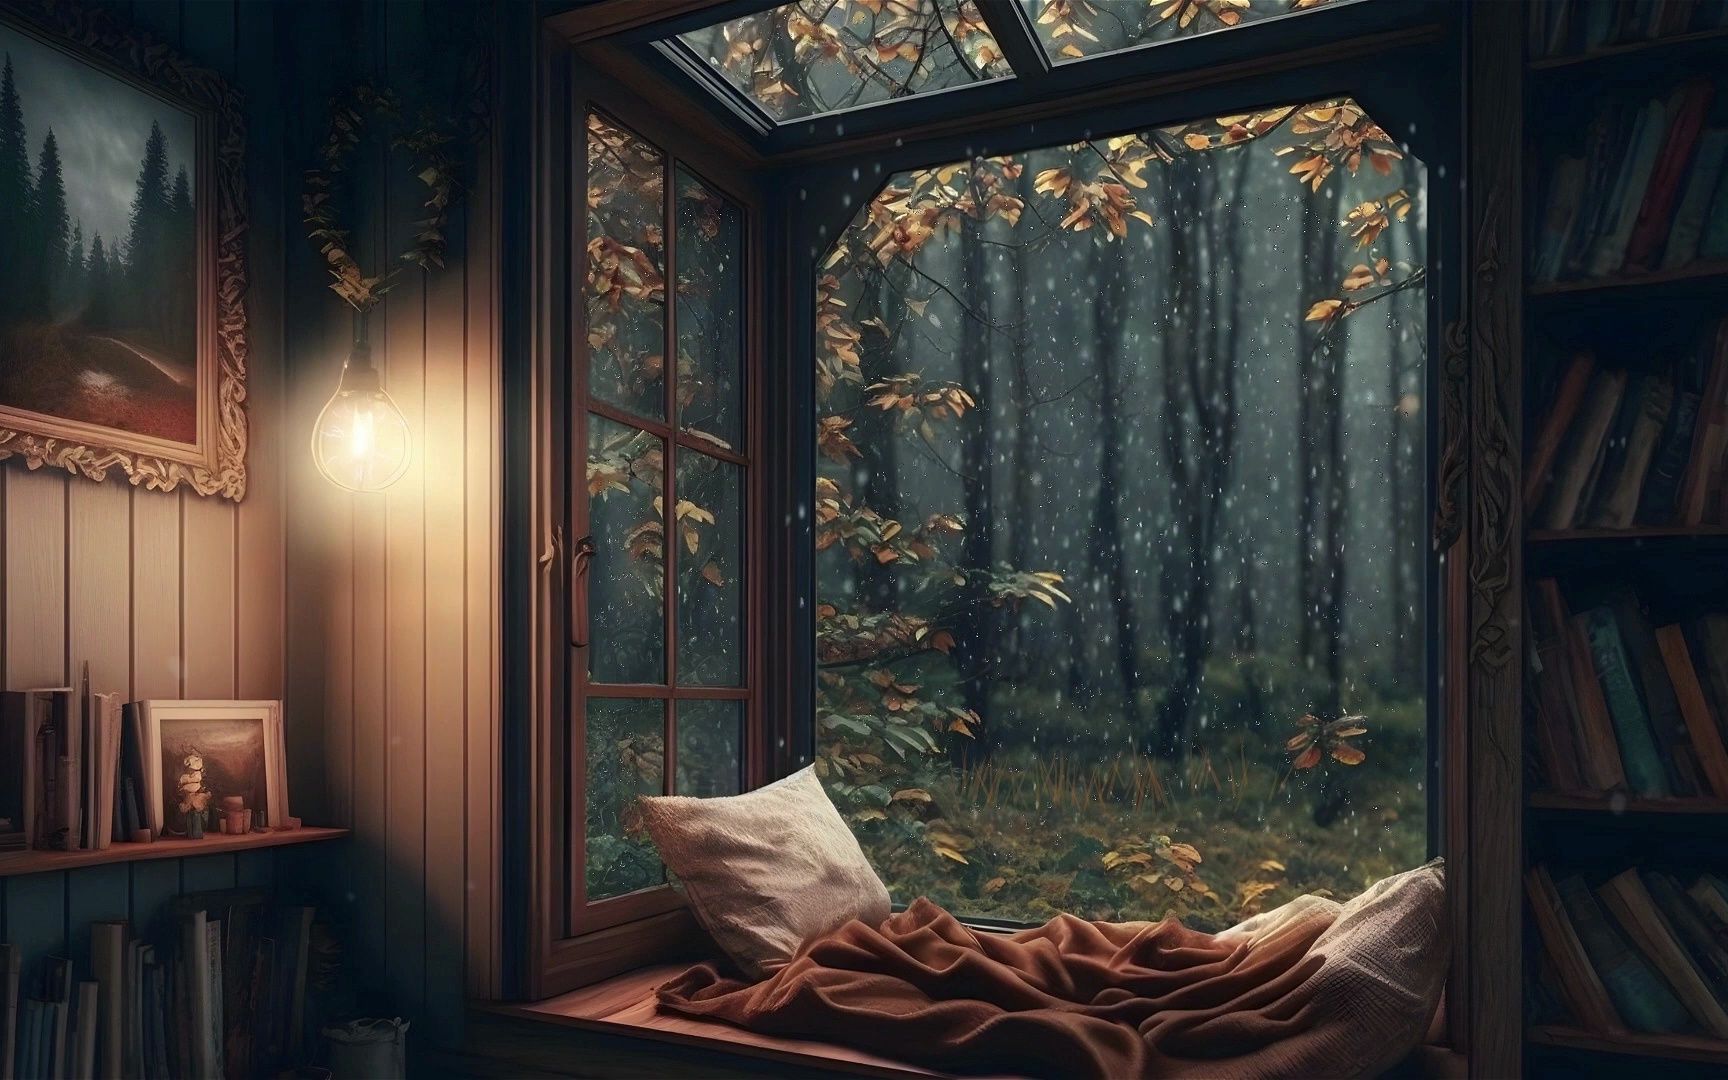 舒适的阅读角落 氛围 📚🌧 大雨打在窗户上的声音